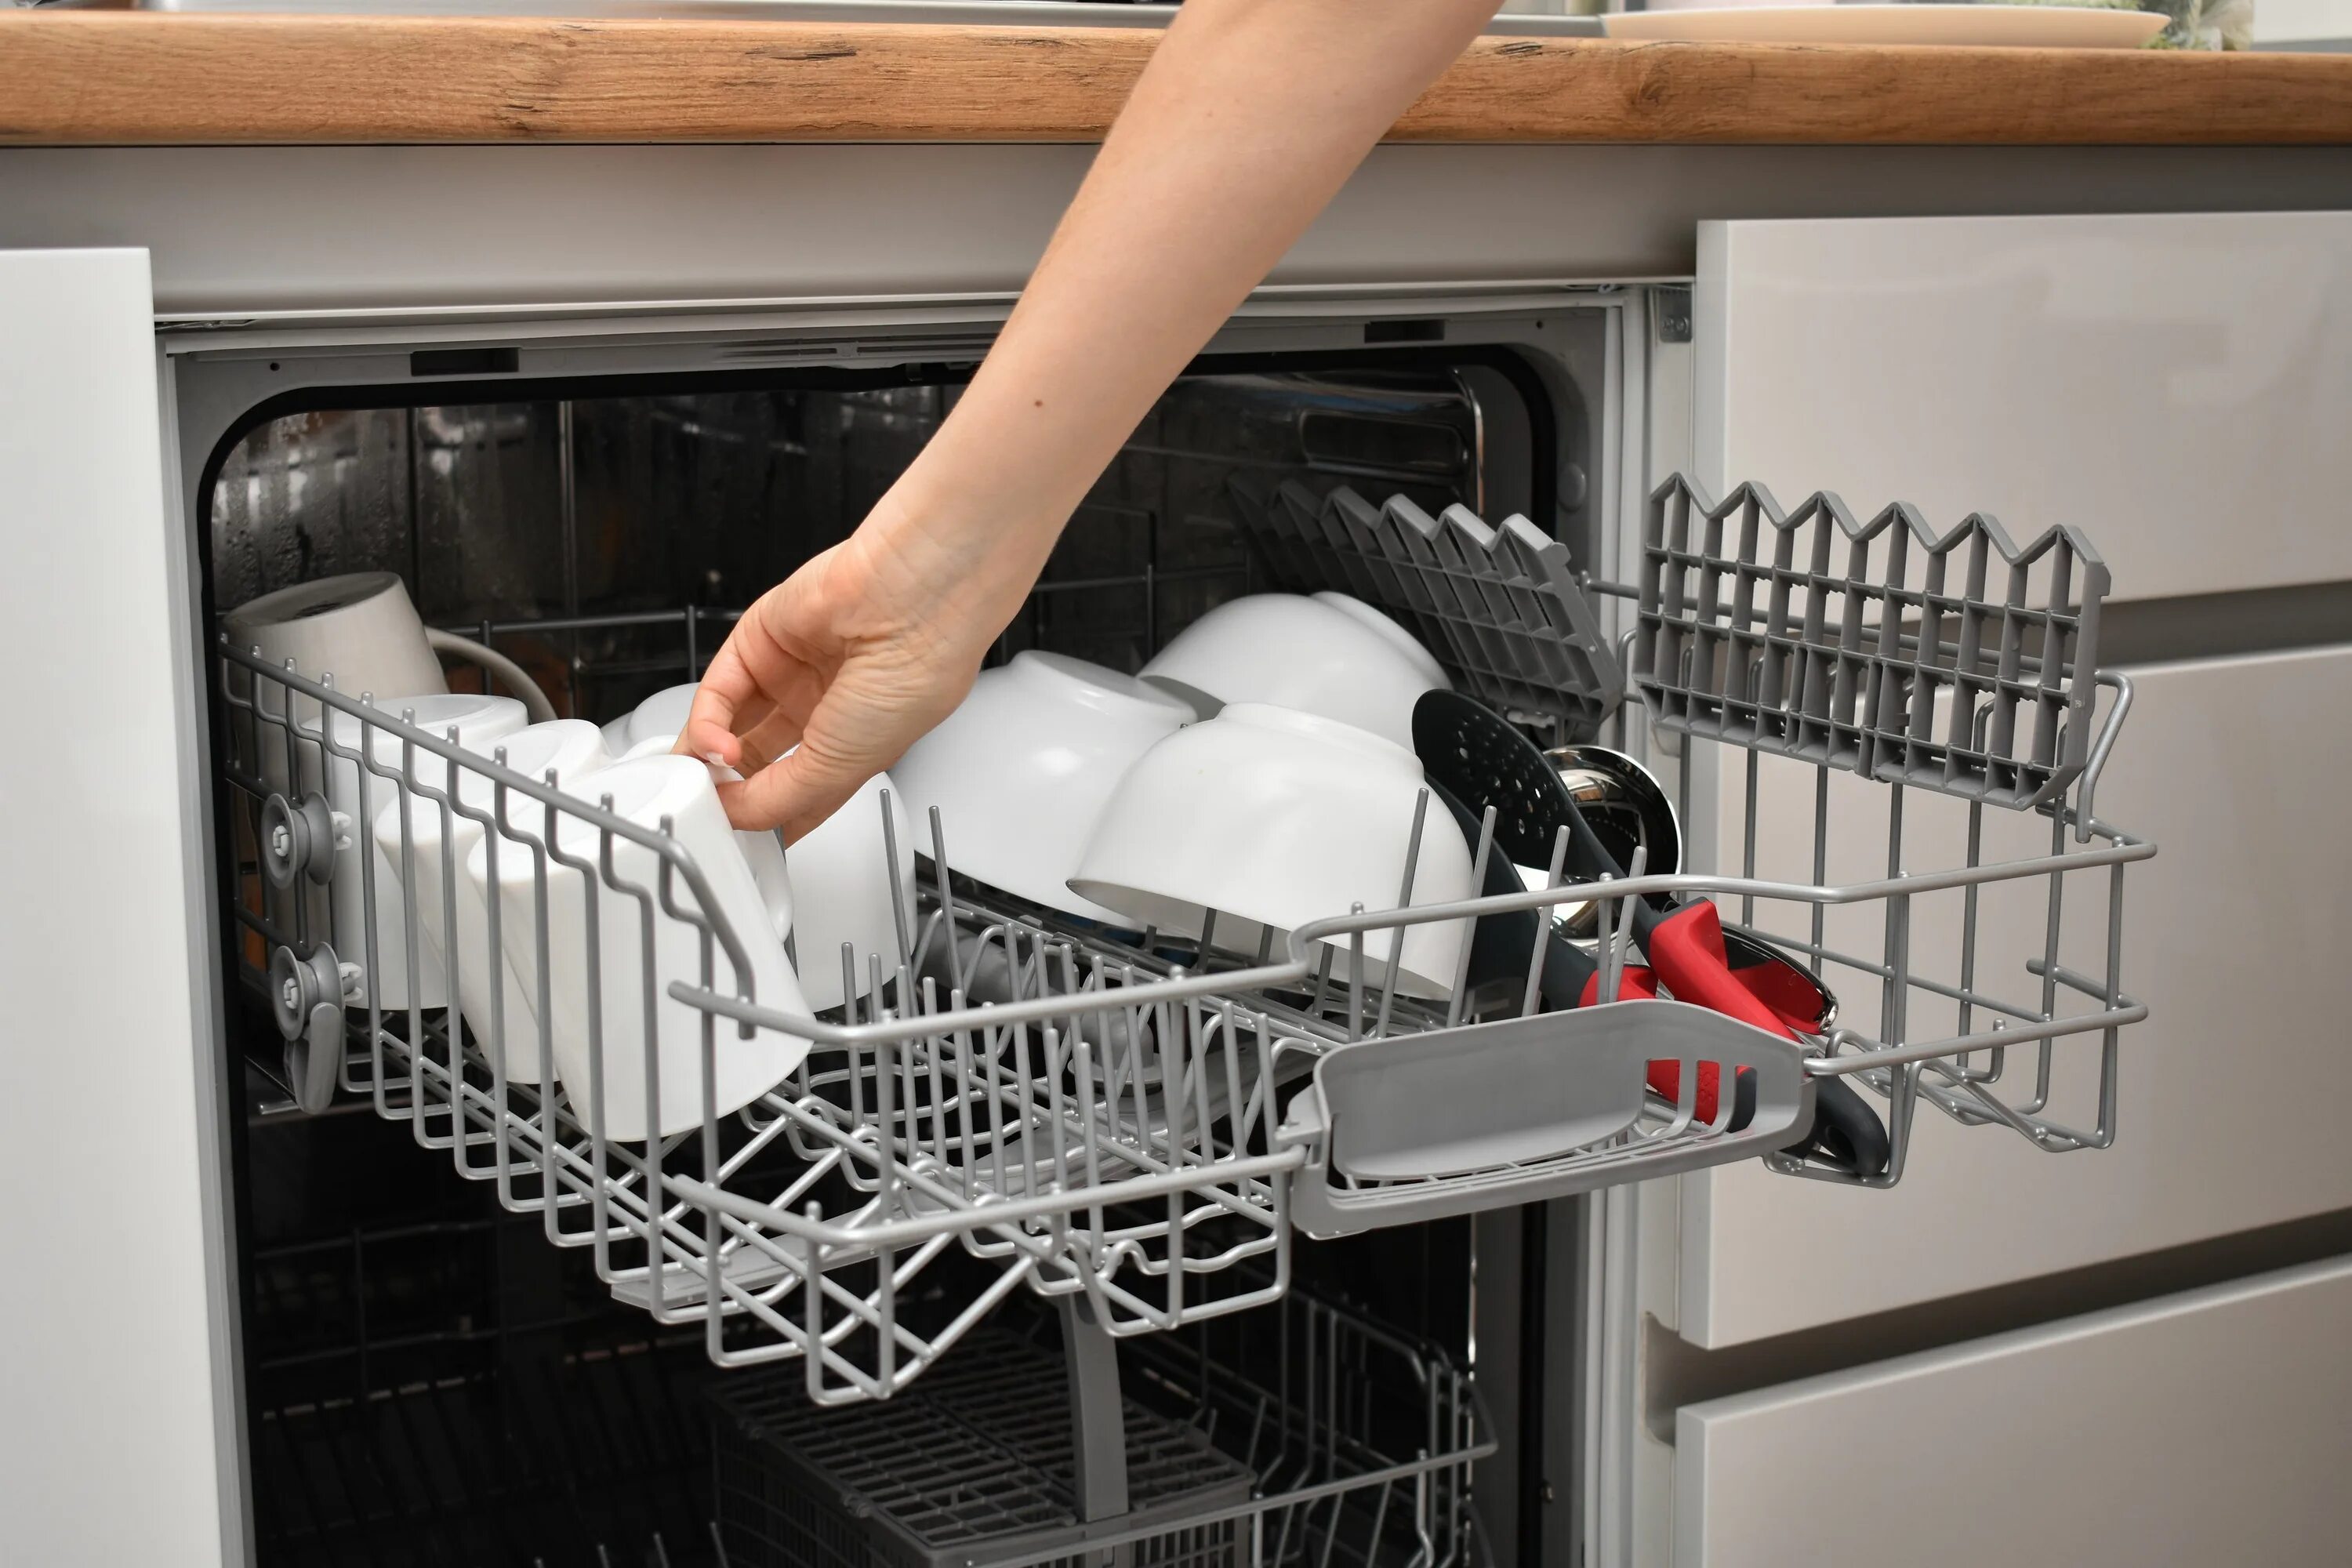 Как крепится посудомойка. Посудомоечная машина на кухне. Посуда в посудомоечной машине. Сетка для посудомоечной машины. Крепление посудомоечной машины к мебели.